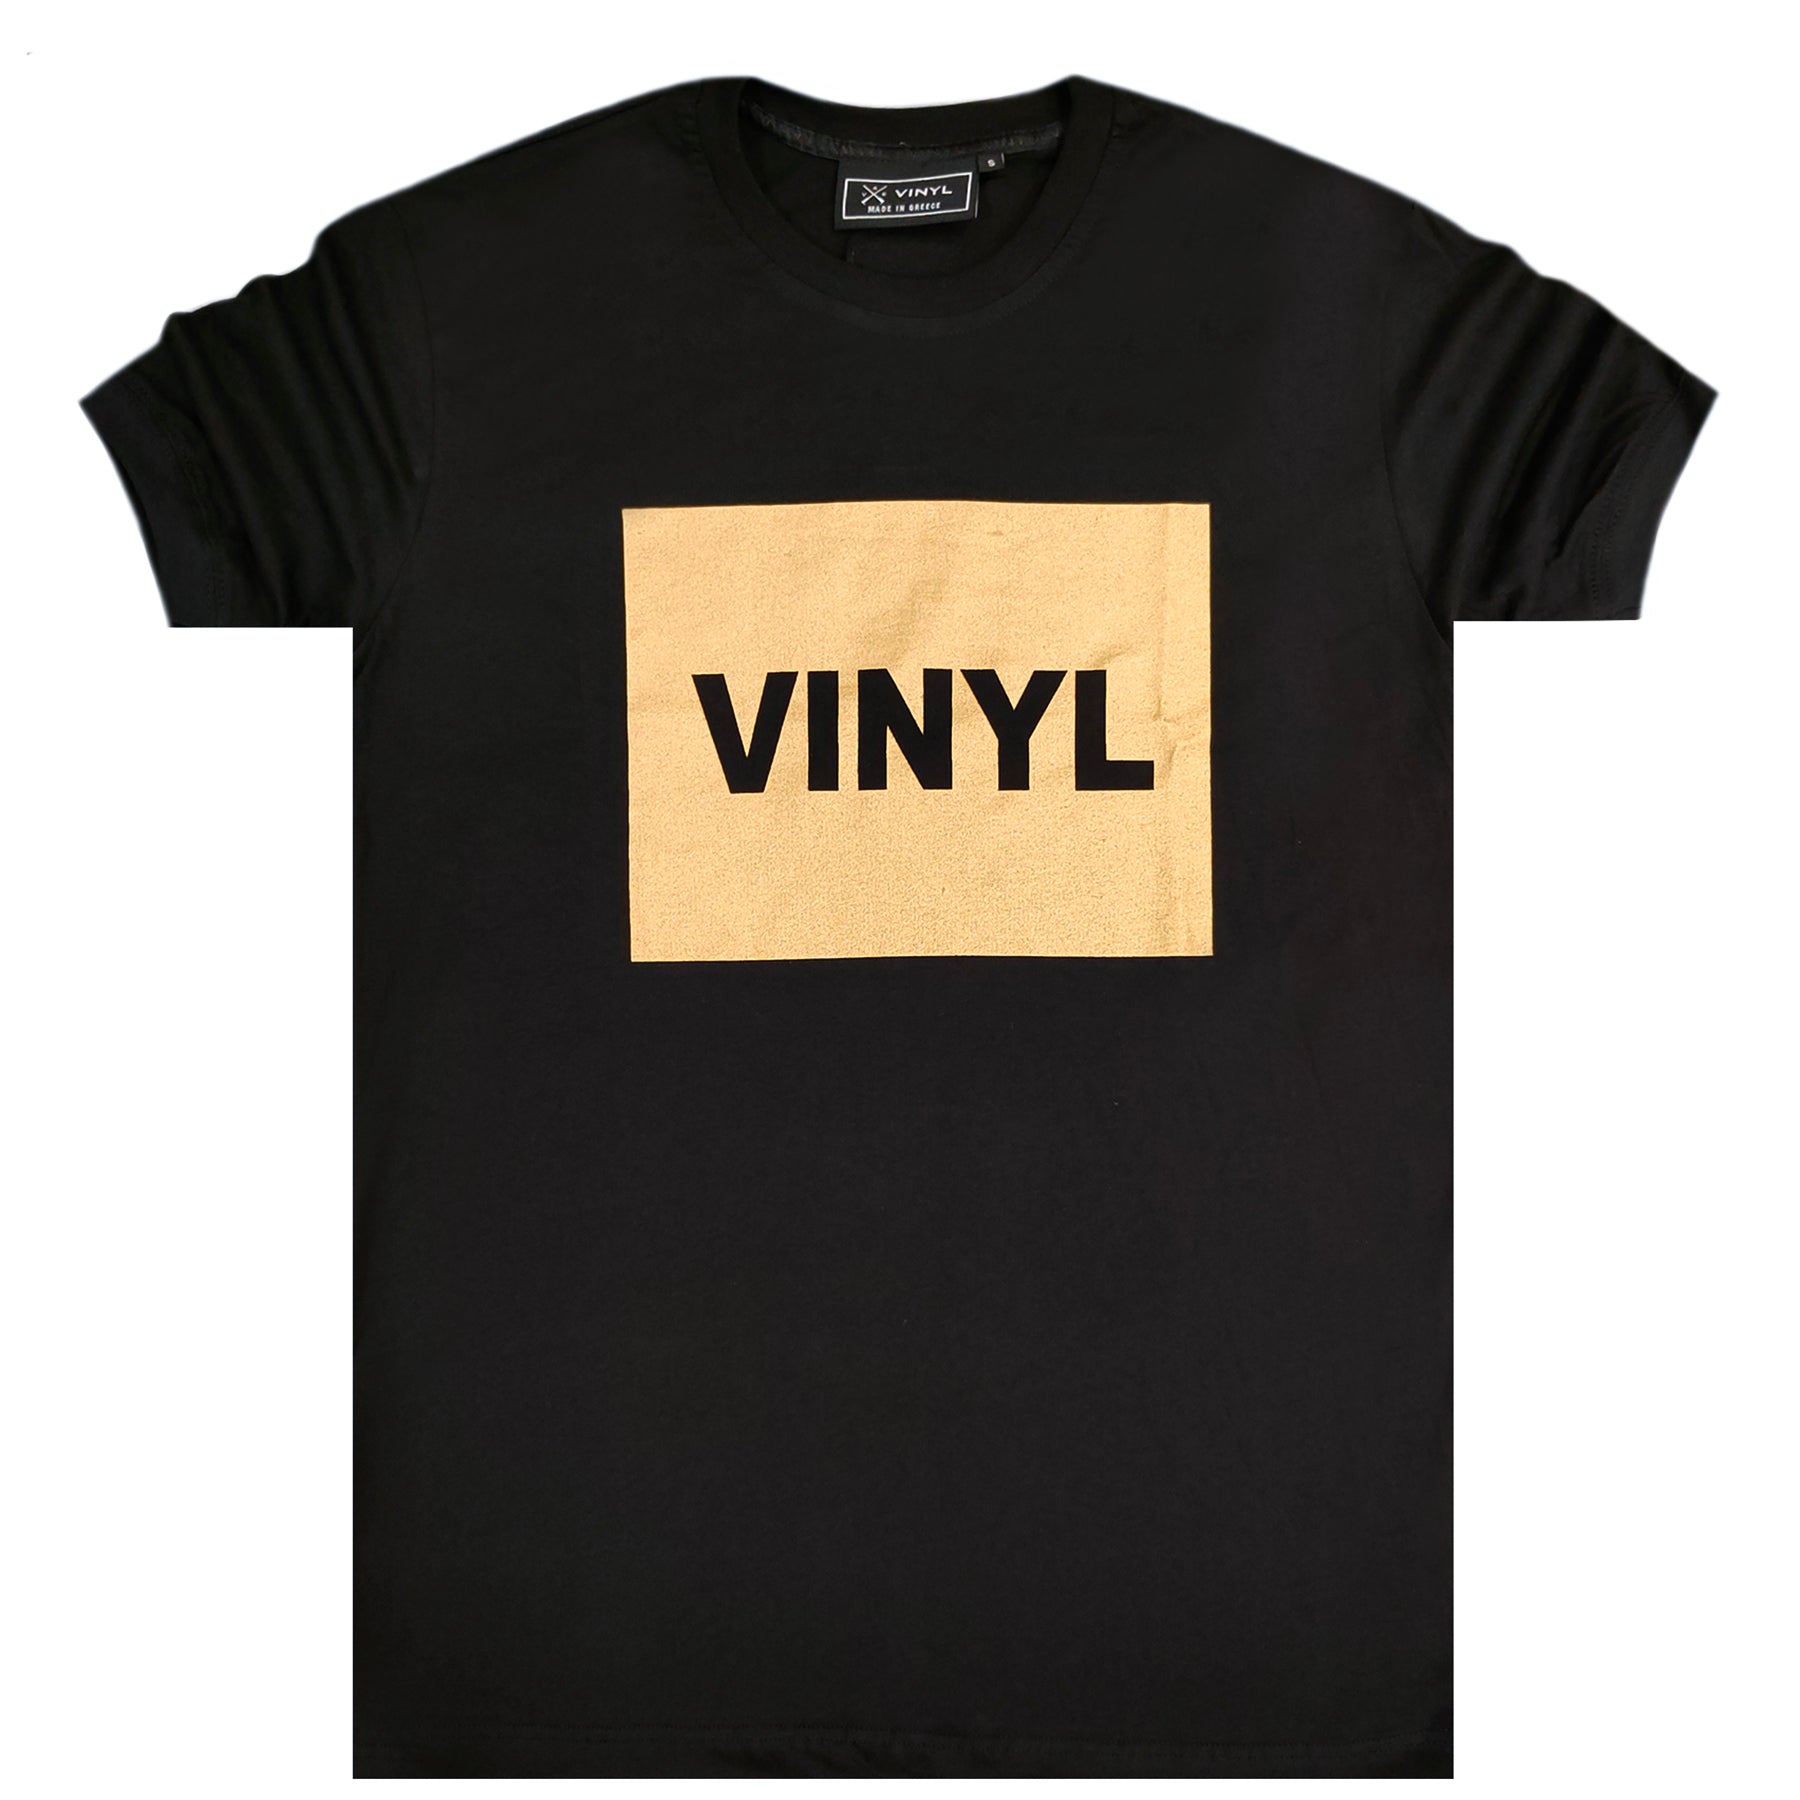 gele lever Nogle gange nogle gange Vinyl art clothing gold box t-shirt - black